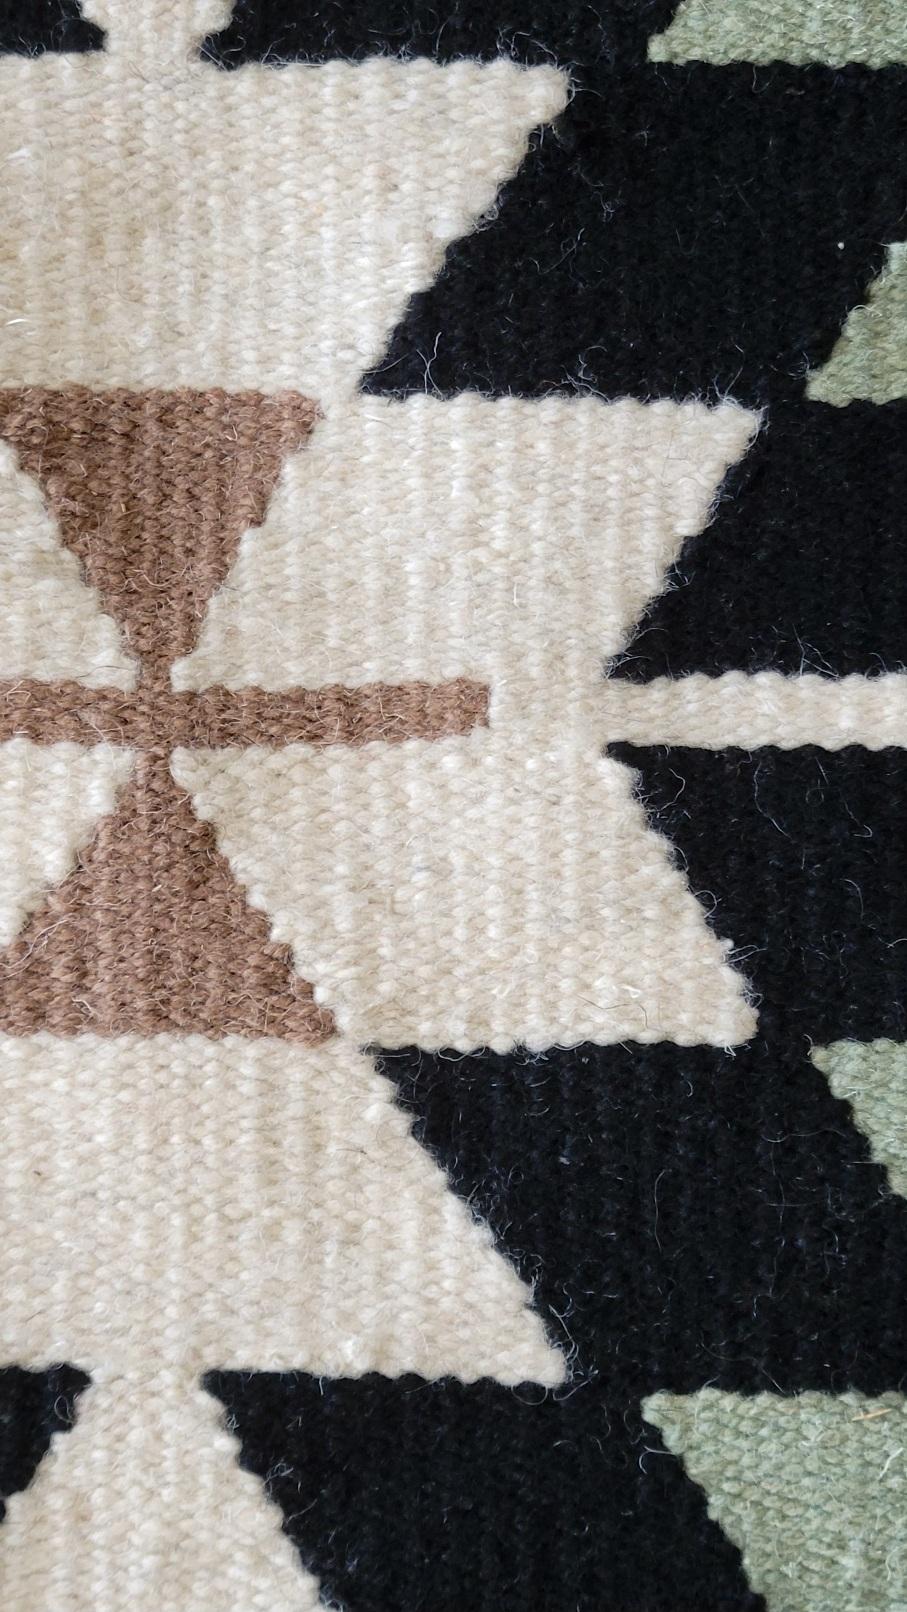 Ce chemin de table en laine rehaussera instantanément votre table. Le matériau en laine doux et durable protégera votre table tout en ajoutant de la chaleur et de la texture à votre décor. Parfaits pour les occasions formelles et décontractées, nos